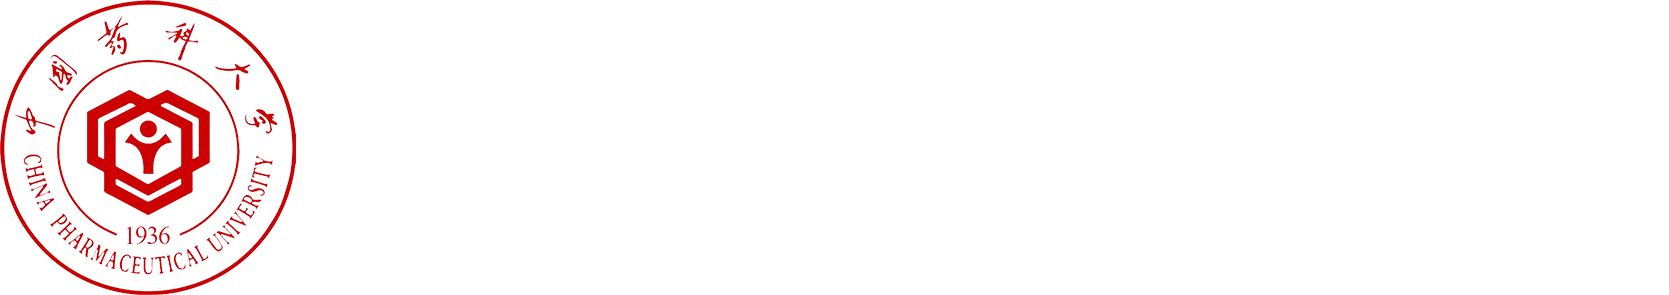 重庆中国药科大学创新研究院